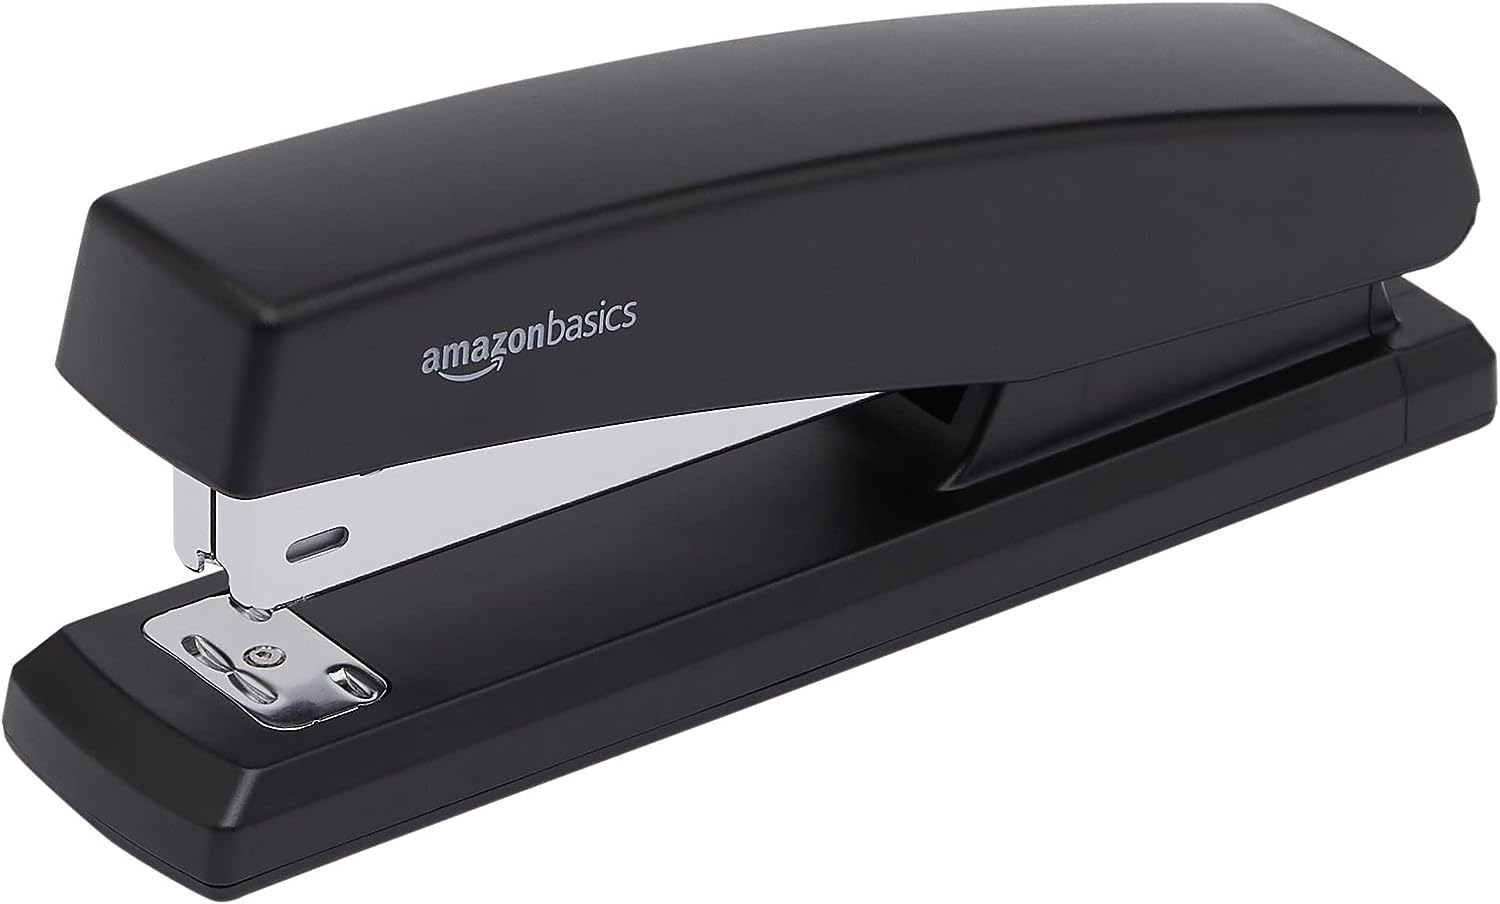 Amazon Basics Stapler w/ 1000 Staples - Black (25 Sheet Capacity) $6.29